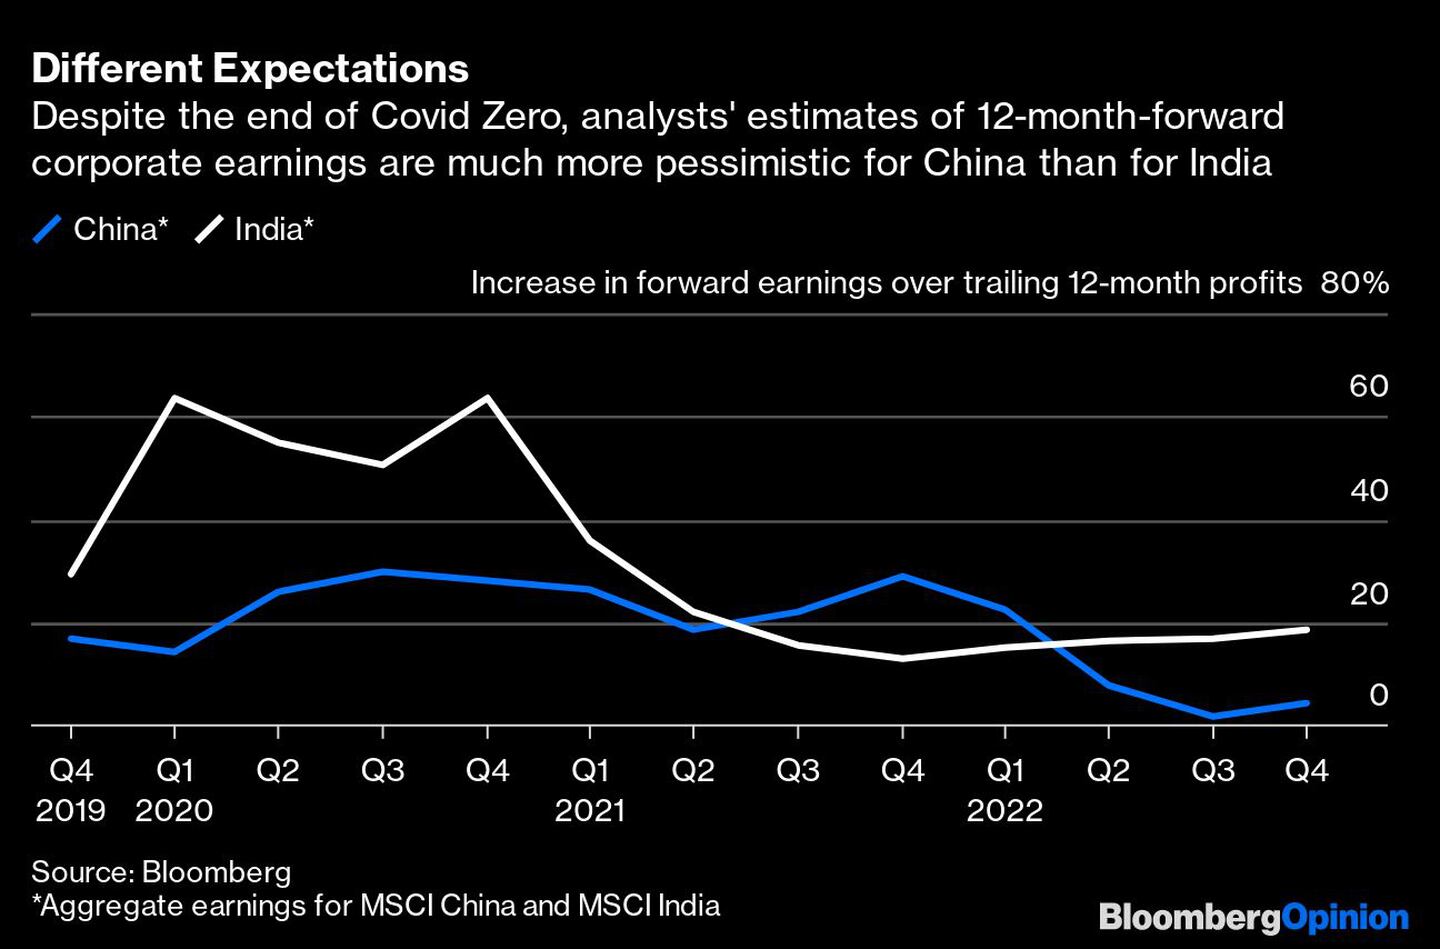 A pesar del fin del cero Covid, las estimaciones de los analistas sobre los beneficios empresariales a 12 meses vista son mucho más pesimistas para China que para la Indiadfd